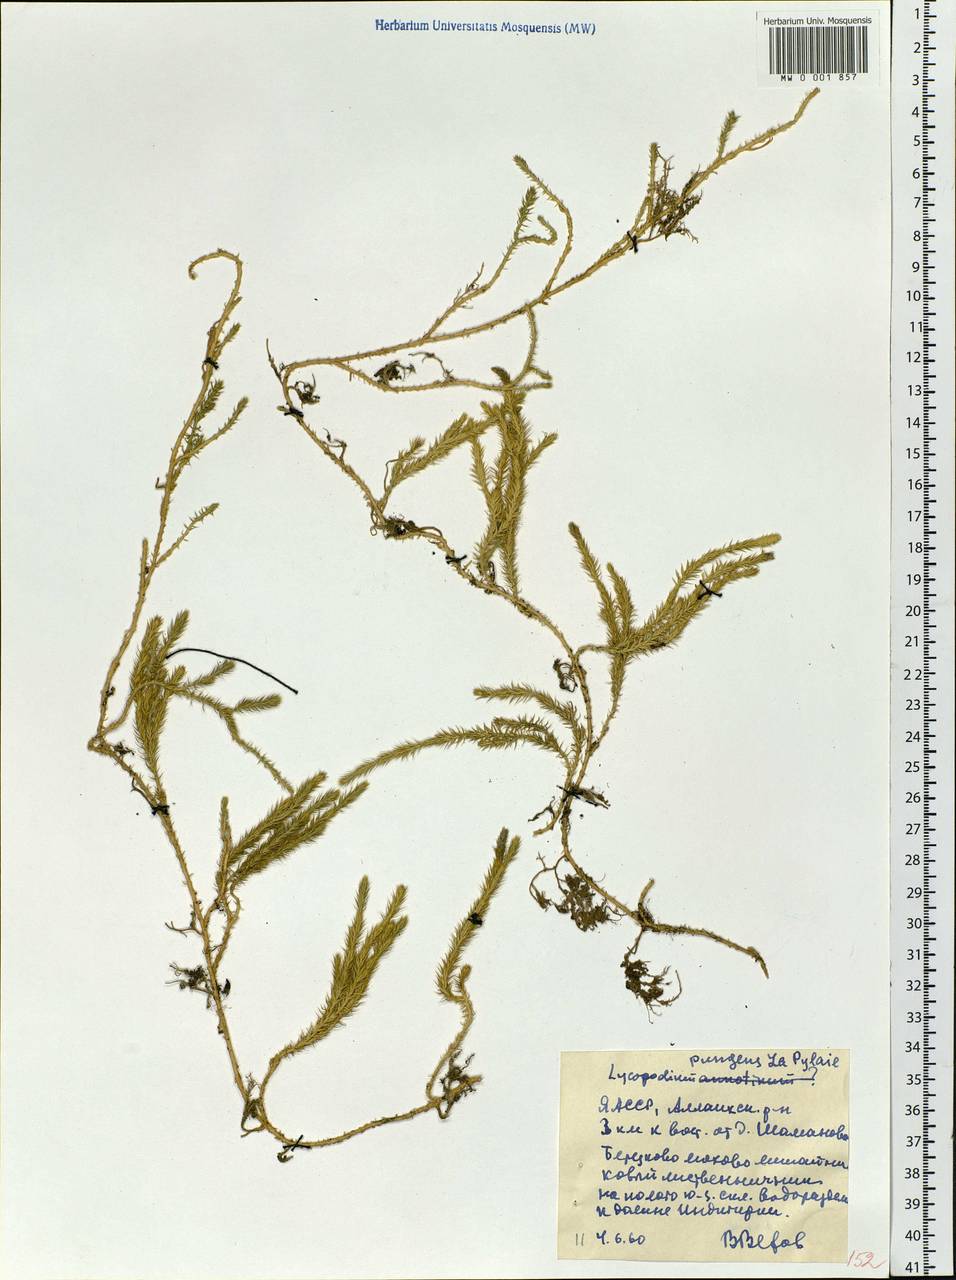 Spinulum annotinum subsp. alpestre (Hartm.) Uotila, Siberia, Yakutia (S5) (Russia)